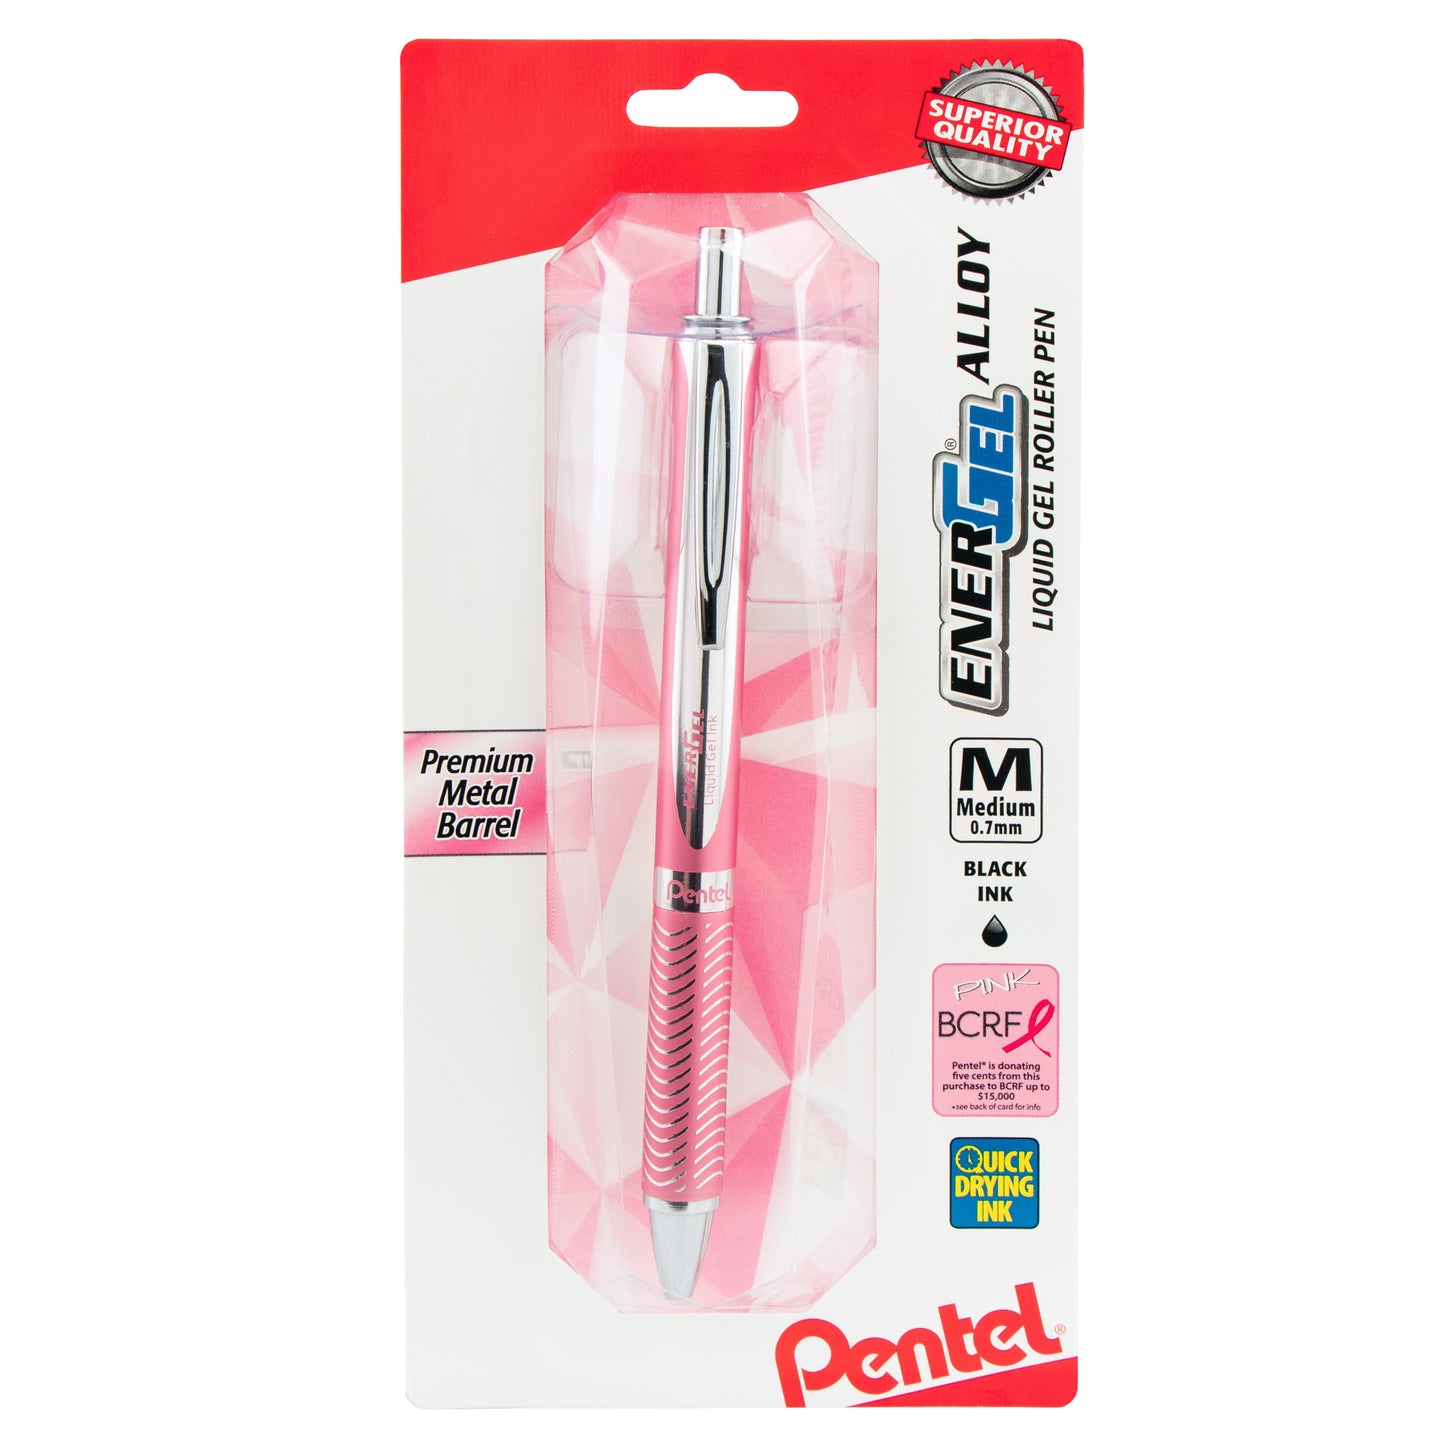 Pentel Energel Pen Pink